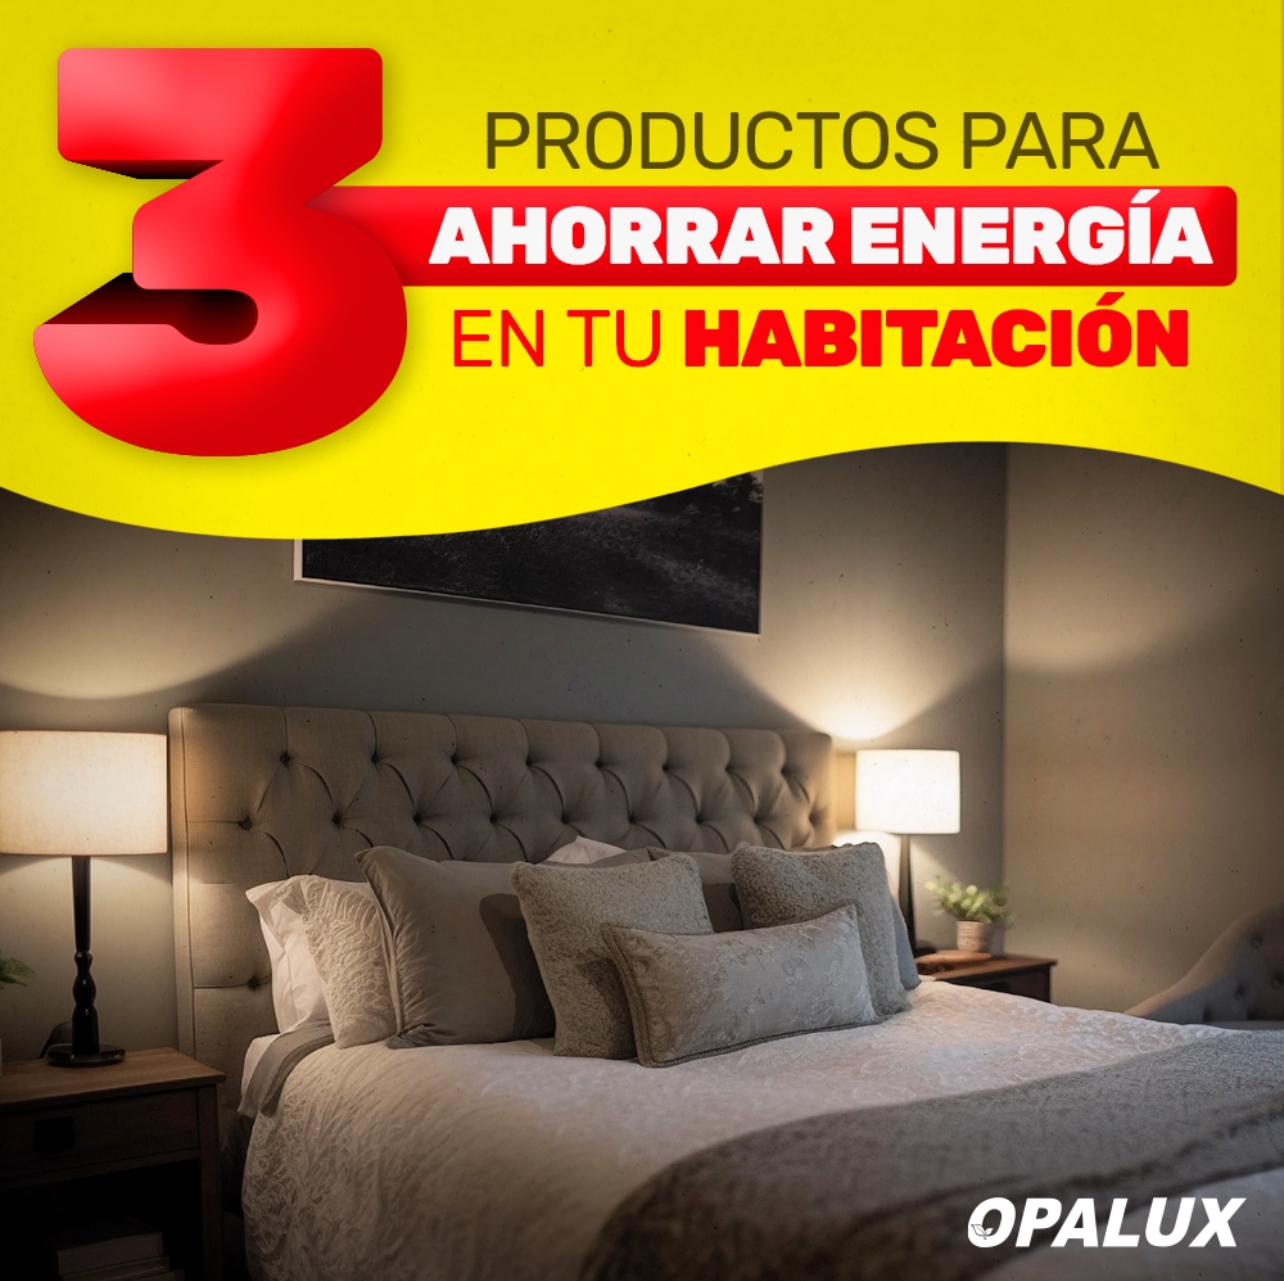 3 PRODUCTOS DE OPALUX PARA AHORRAR ENERGÍA EN TU HABITACIÓN